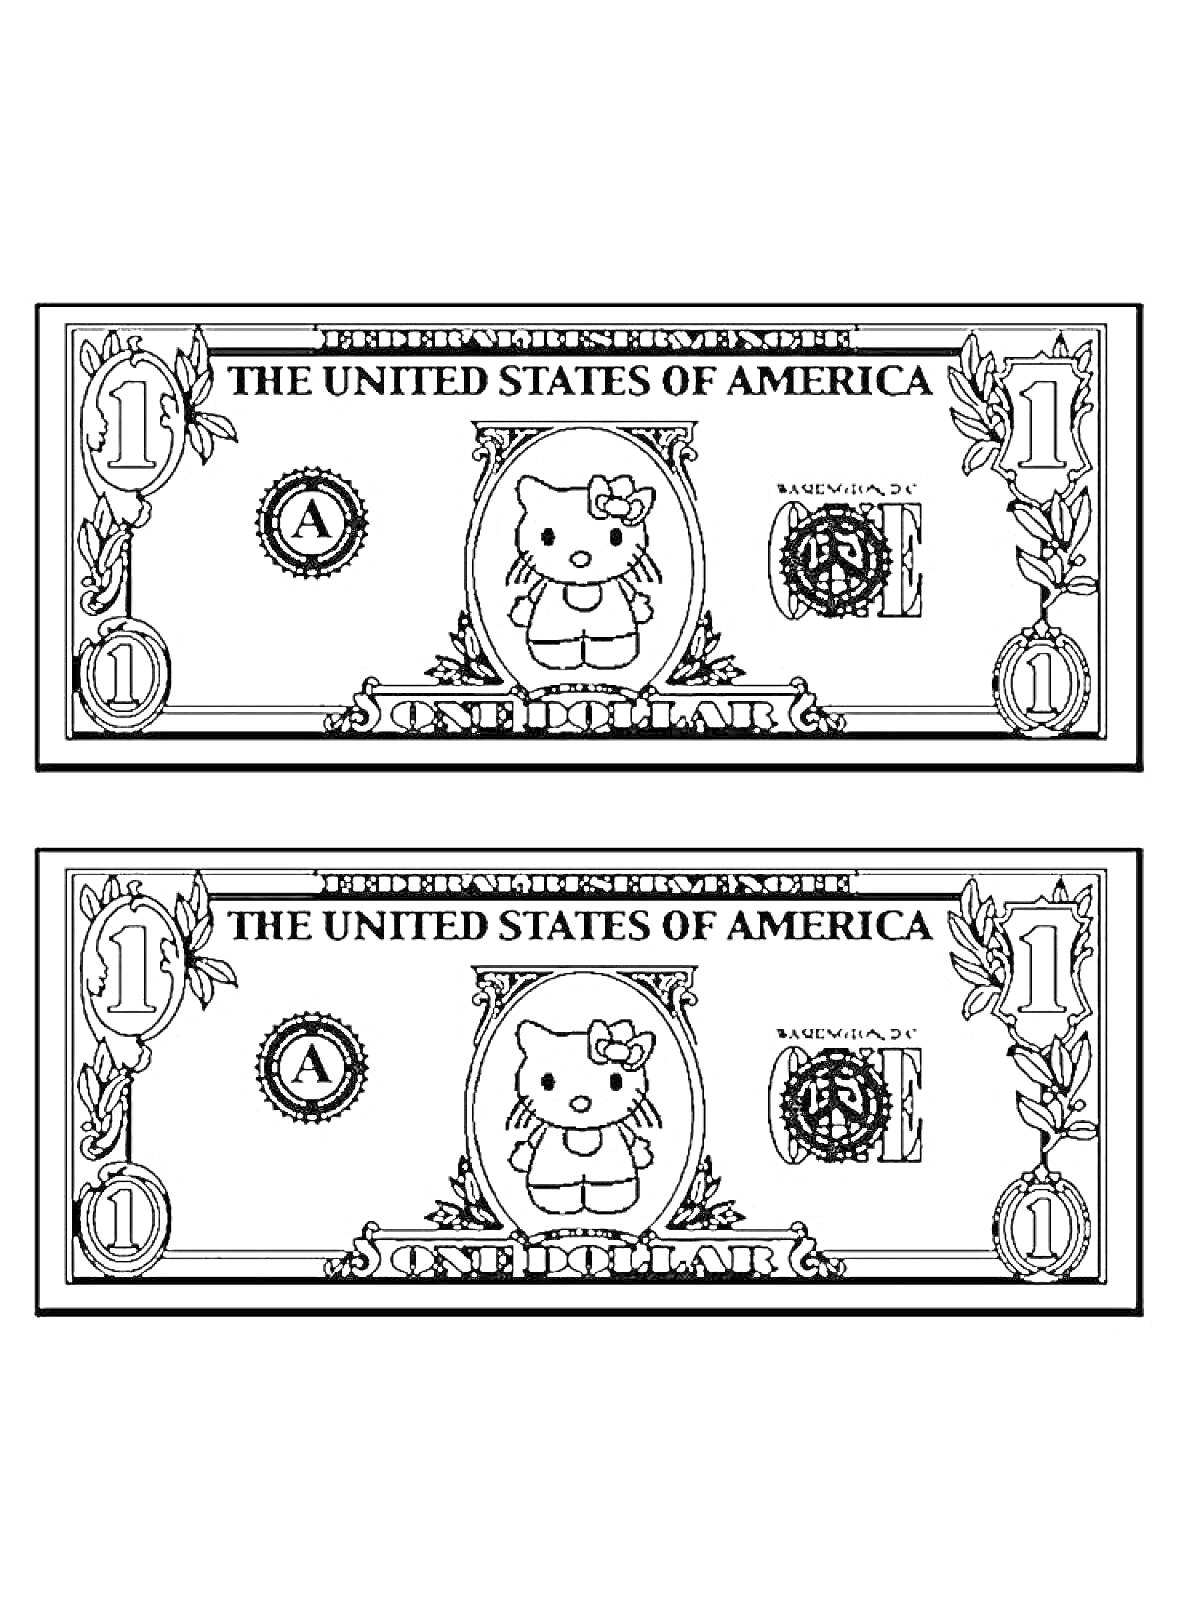 Изображение двух купюр в один доллар с картинкой персонажа и надписями 